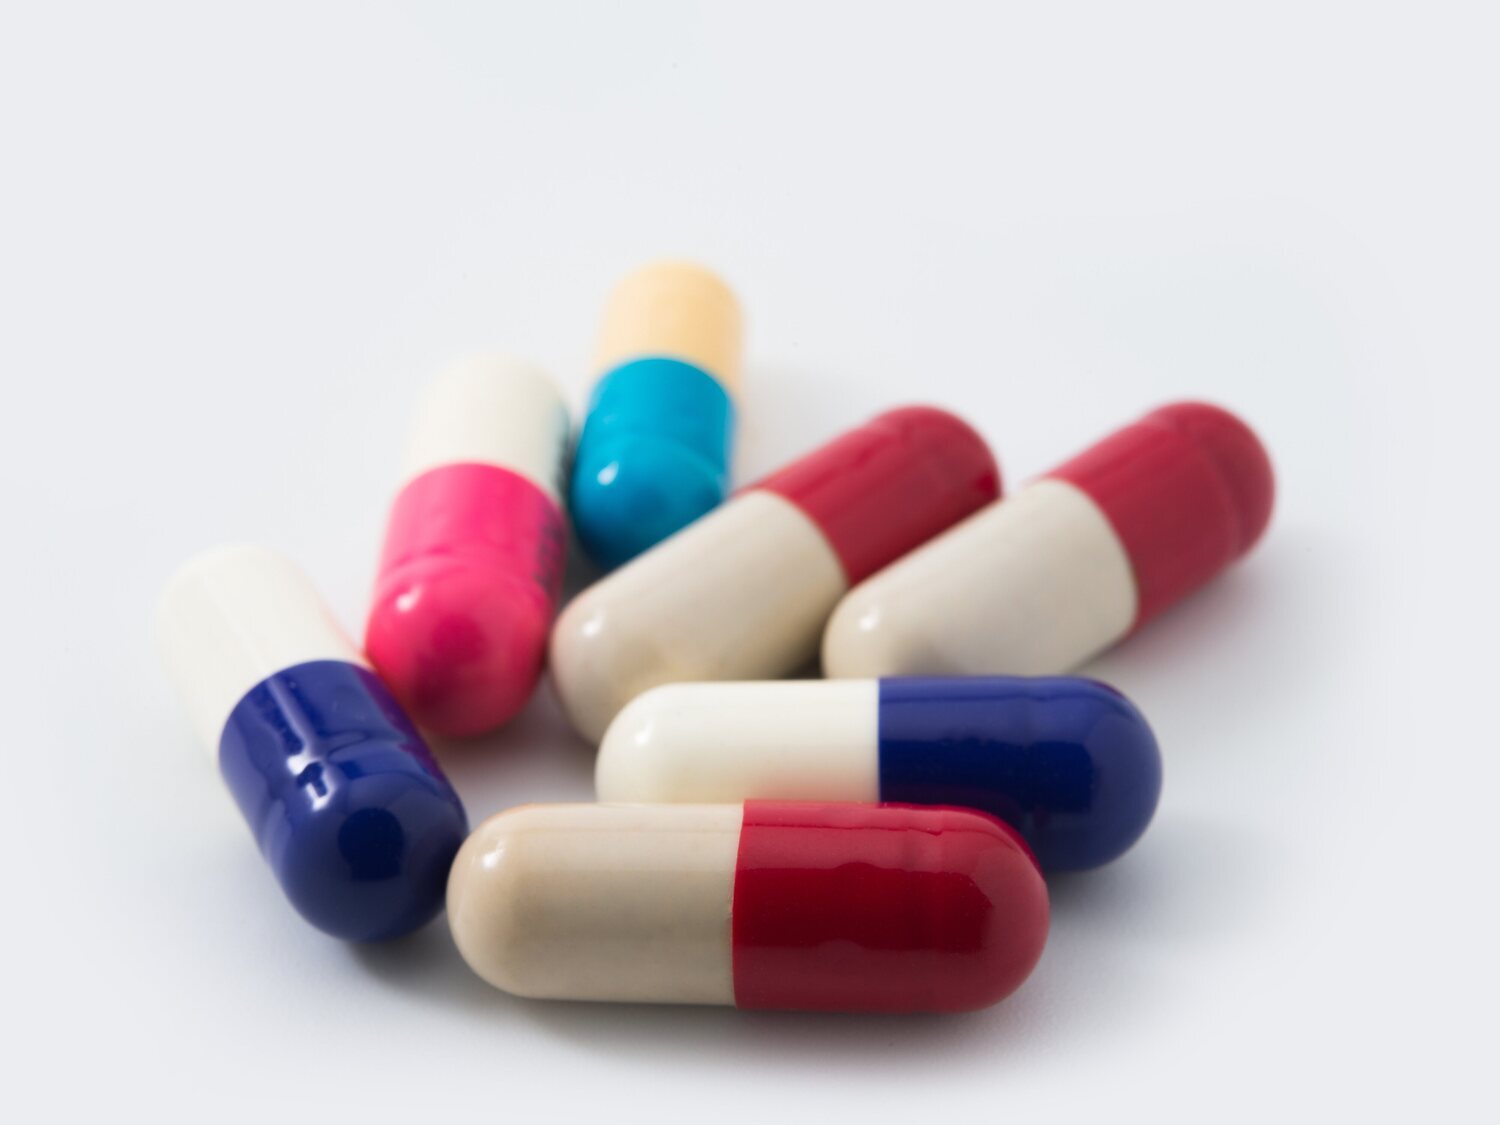 Alerta sanitaria en España: retiran este popular medicamento de las farmacias y piden evitar su consumo